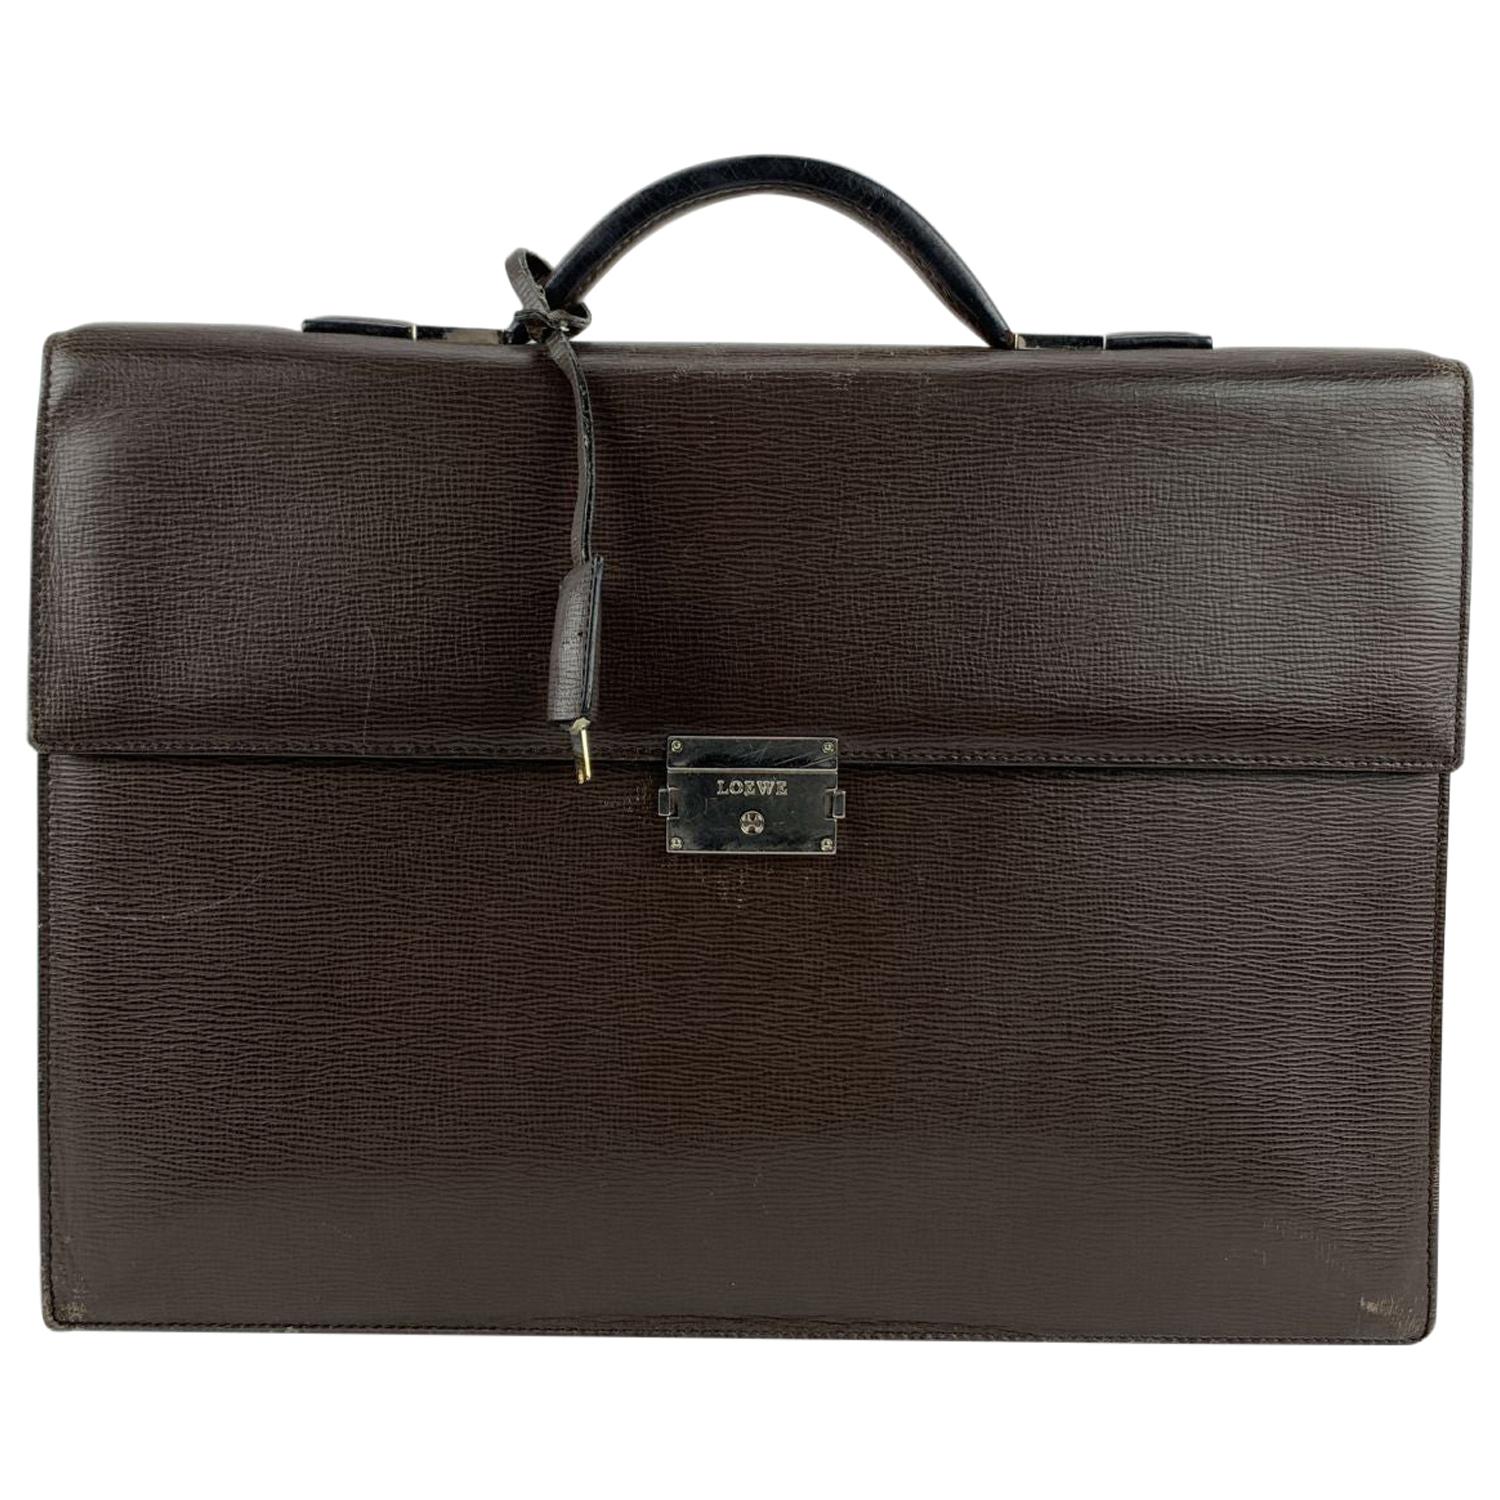 Loewe Brown Textured Leather Briefcase Work Bag